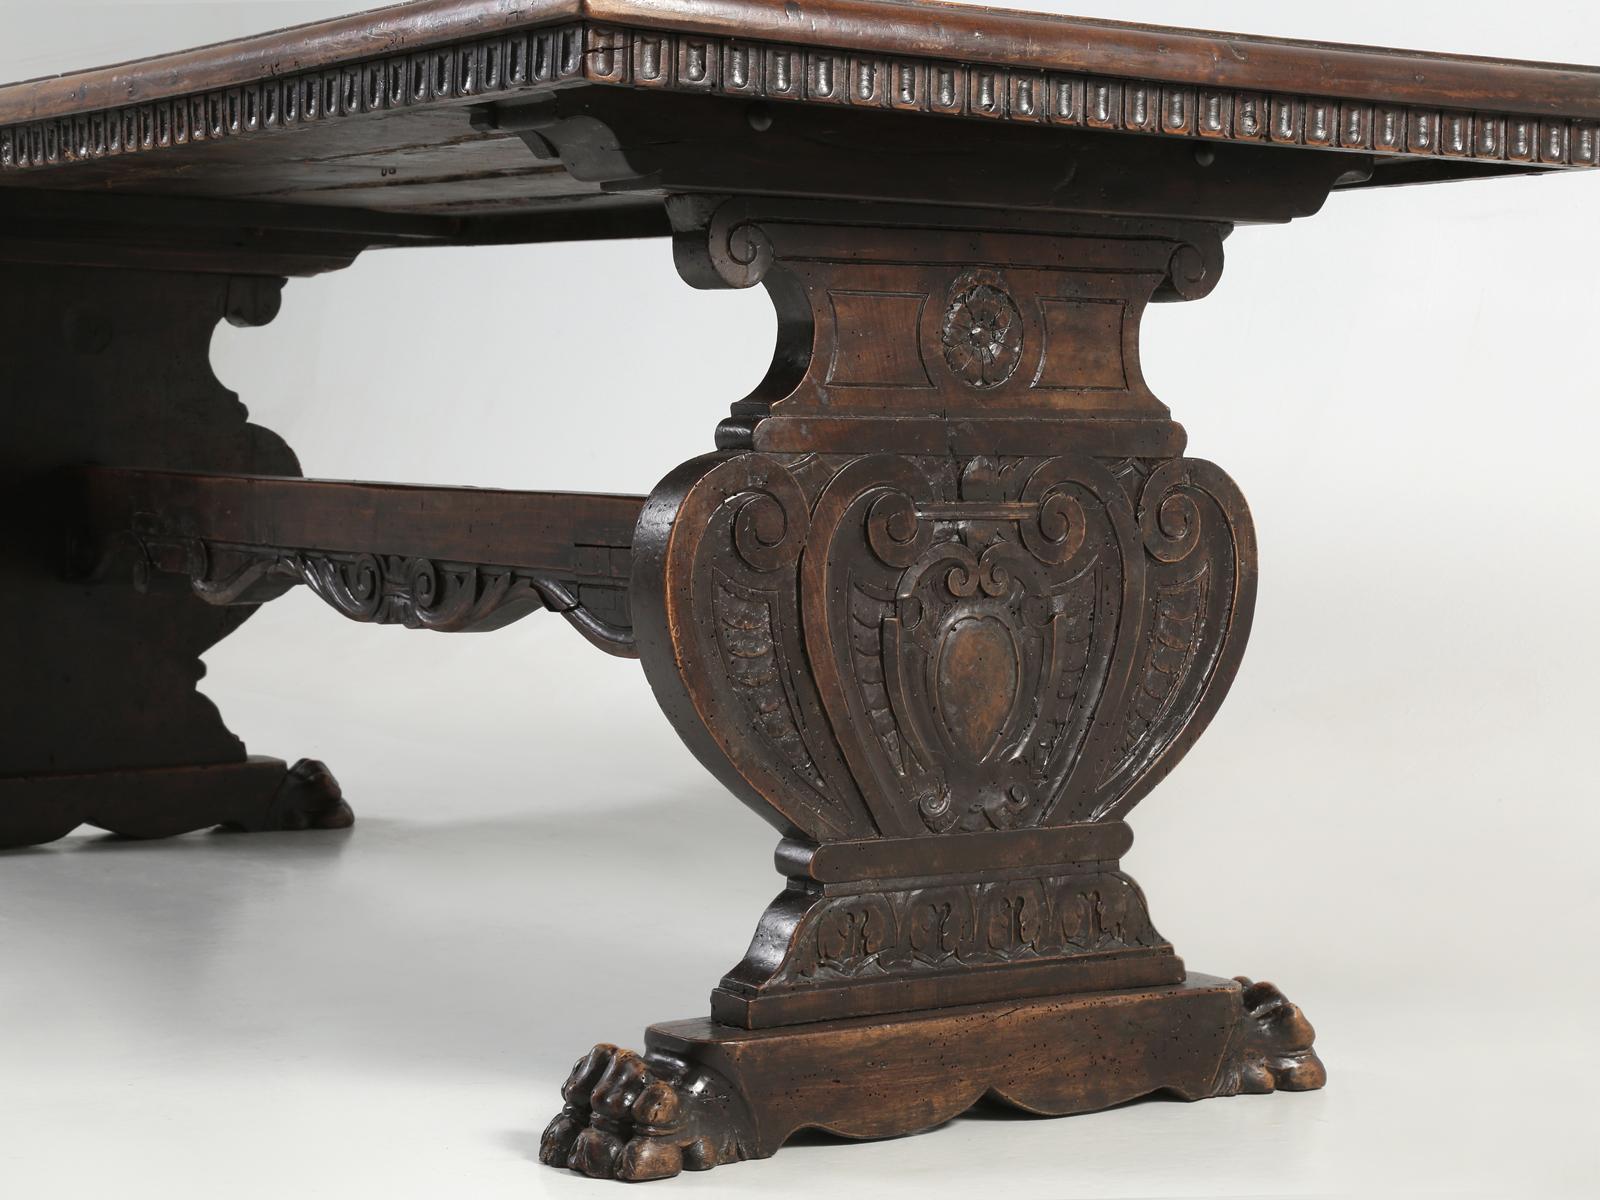 Antique French Trestle Dining Table with a Fleur-de-Lys Design Motif 2